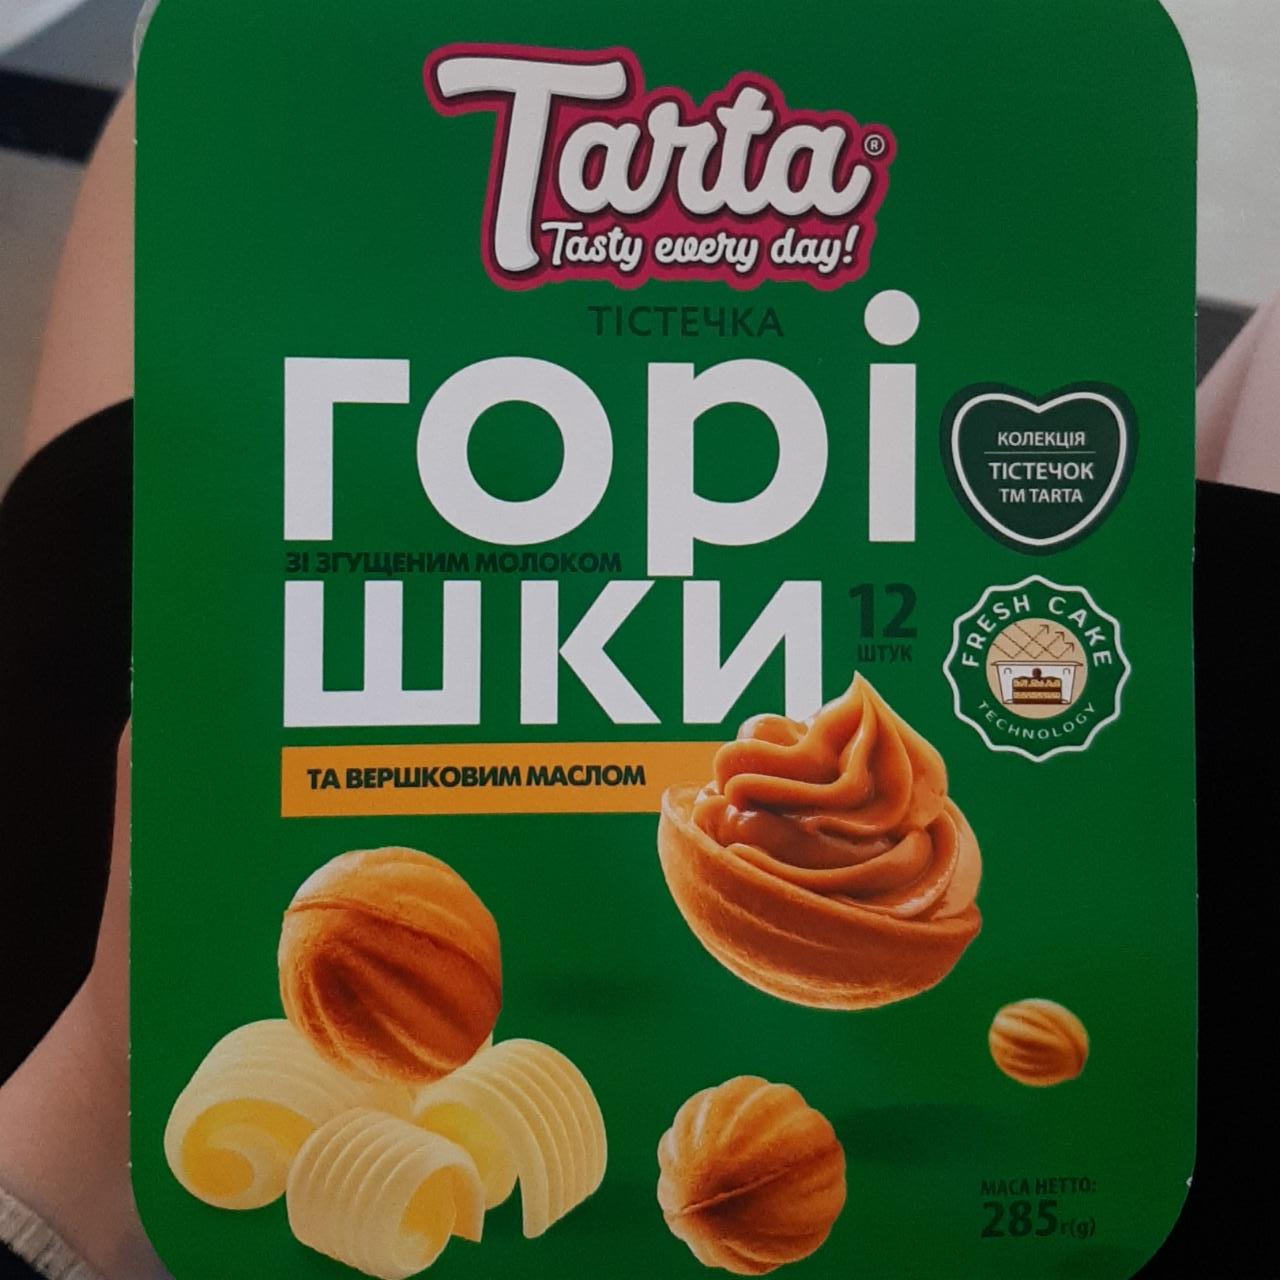 Фото - Пирожные орешки со сгущенкой и сливочным маслом Tarta